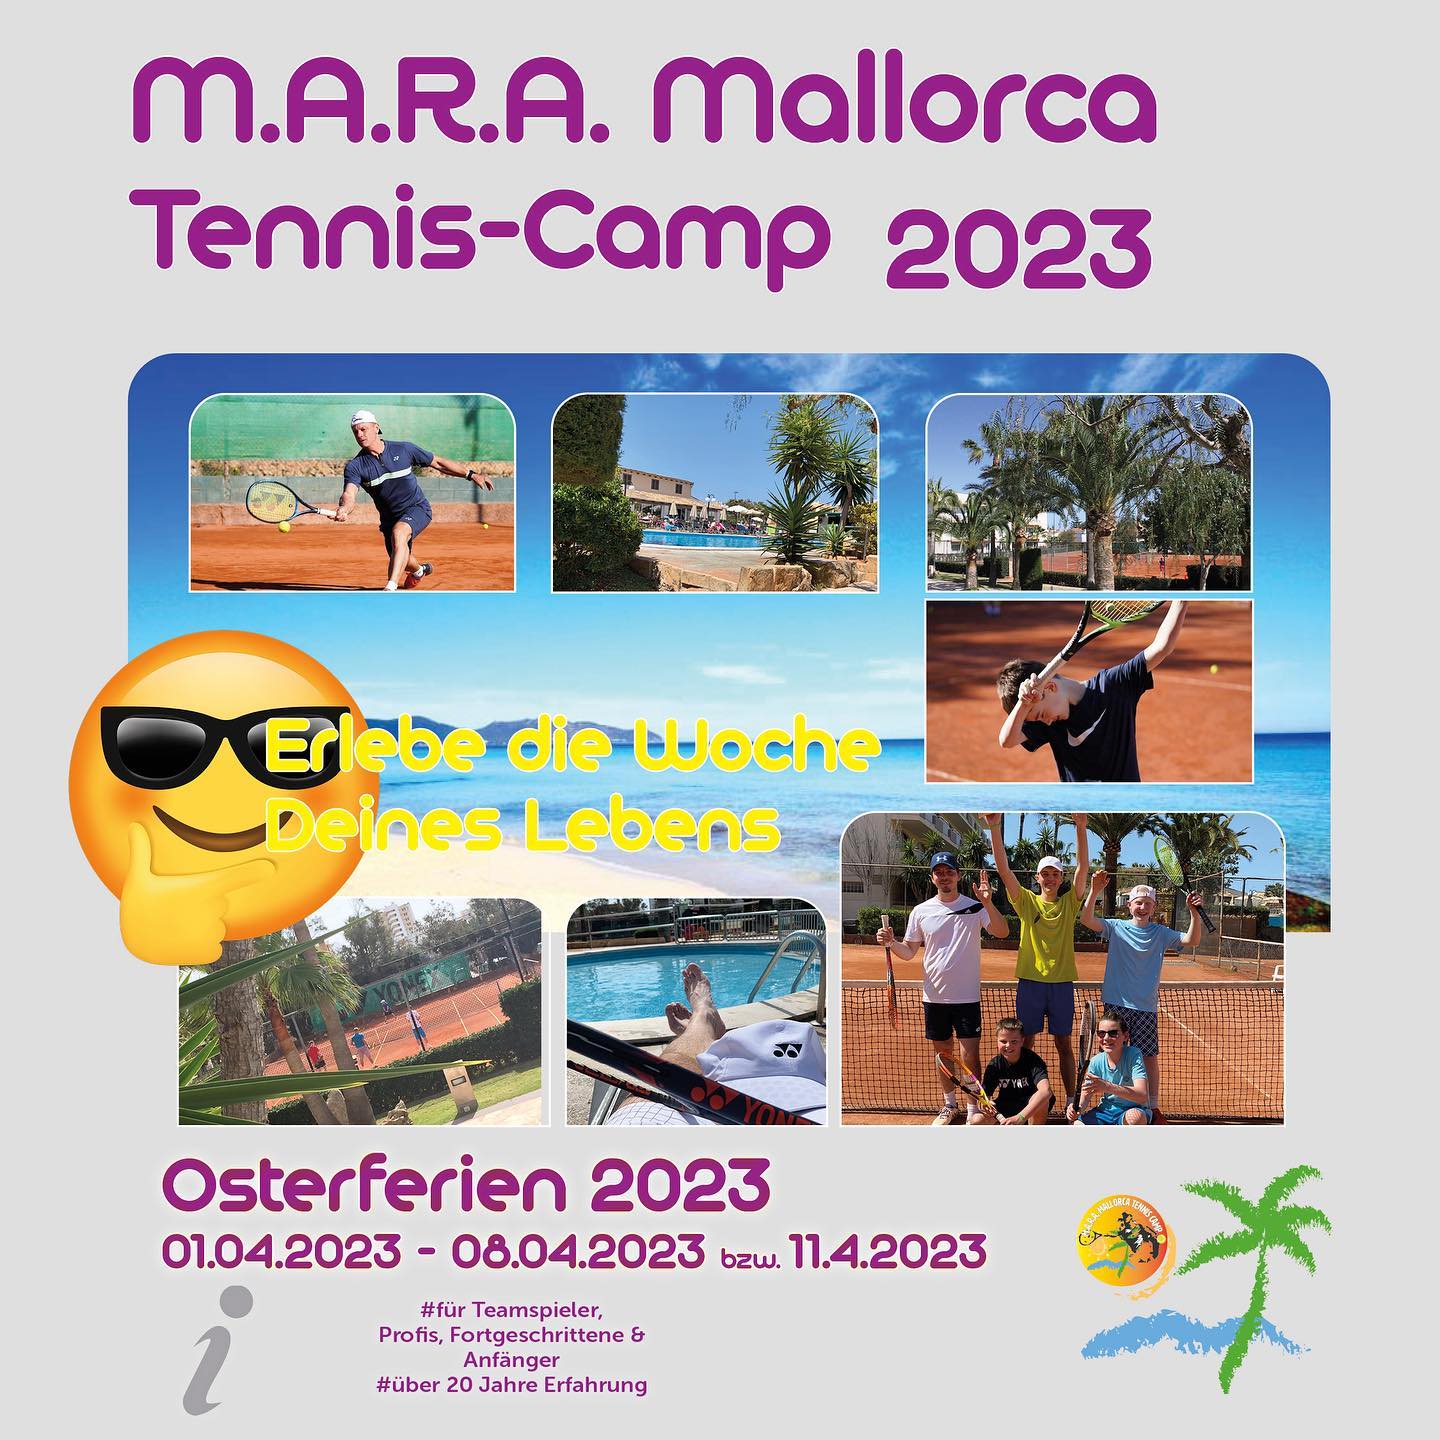 Das M.A.R.A. Mallorca Tennis-Camp geht in die nächste Woche! 🎾
Im April 2023 geht es für uns wieder einmal nach 🇪🇸 in den Club Simó in Cala Millor.
Kommt mit ✈️ und erlebt mit uns gemeinsam im #teammara eine unvergessliche Tennis-Zeit auf und neben dem Platz! 🤩
Für mehr Infos: ⬇️
https://mara-sc.de
oder schreibt uns direkt eine DM 💬
🌞🌞🌞
Wir freuen uns auf Euch!
@yonex_tennis 
@reisebueroplum 
#mallorcatenniscamp 
#season2023 
#teammara🧡